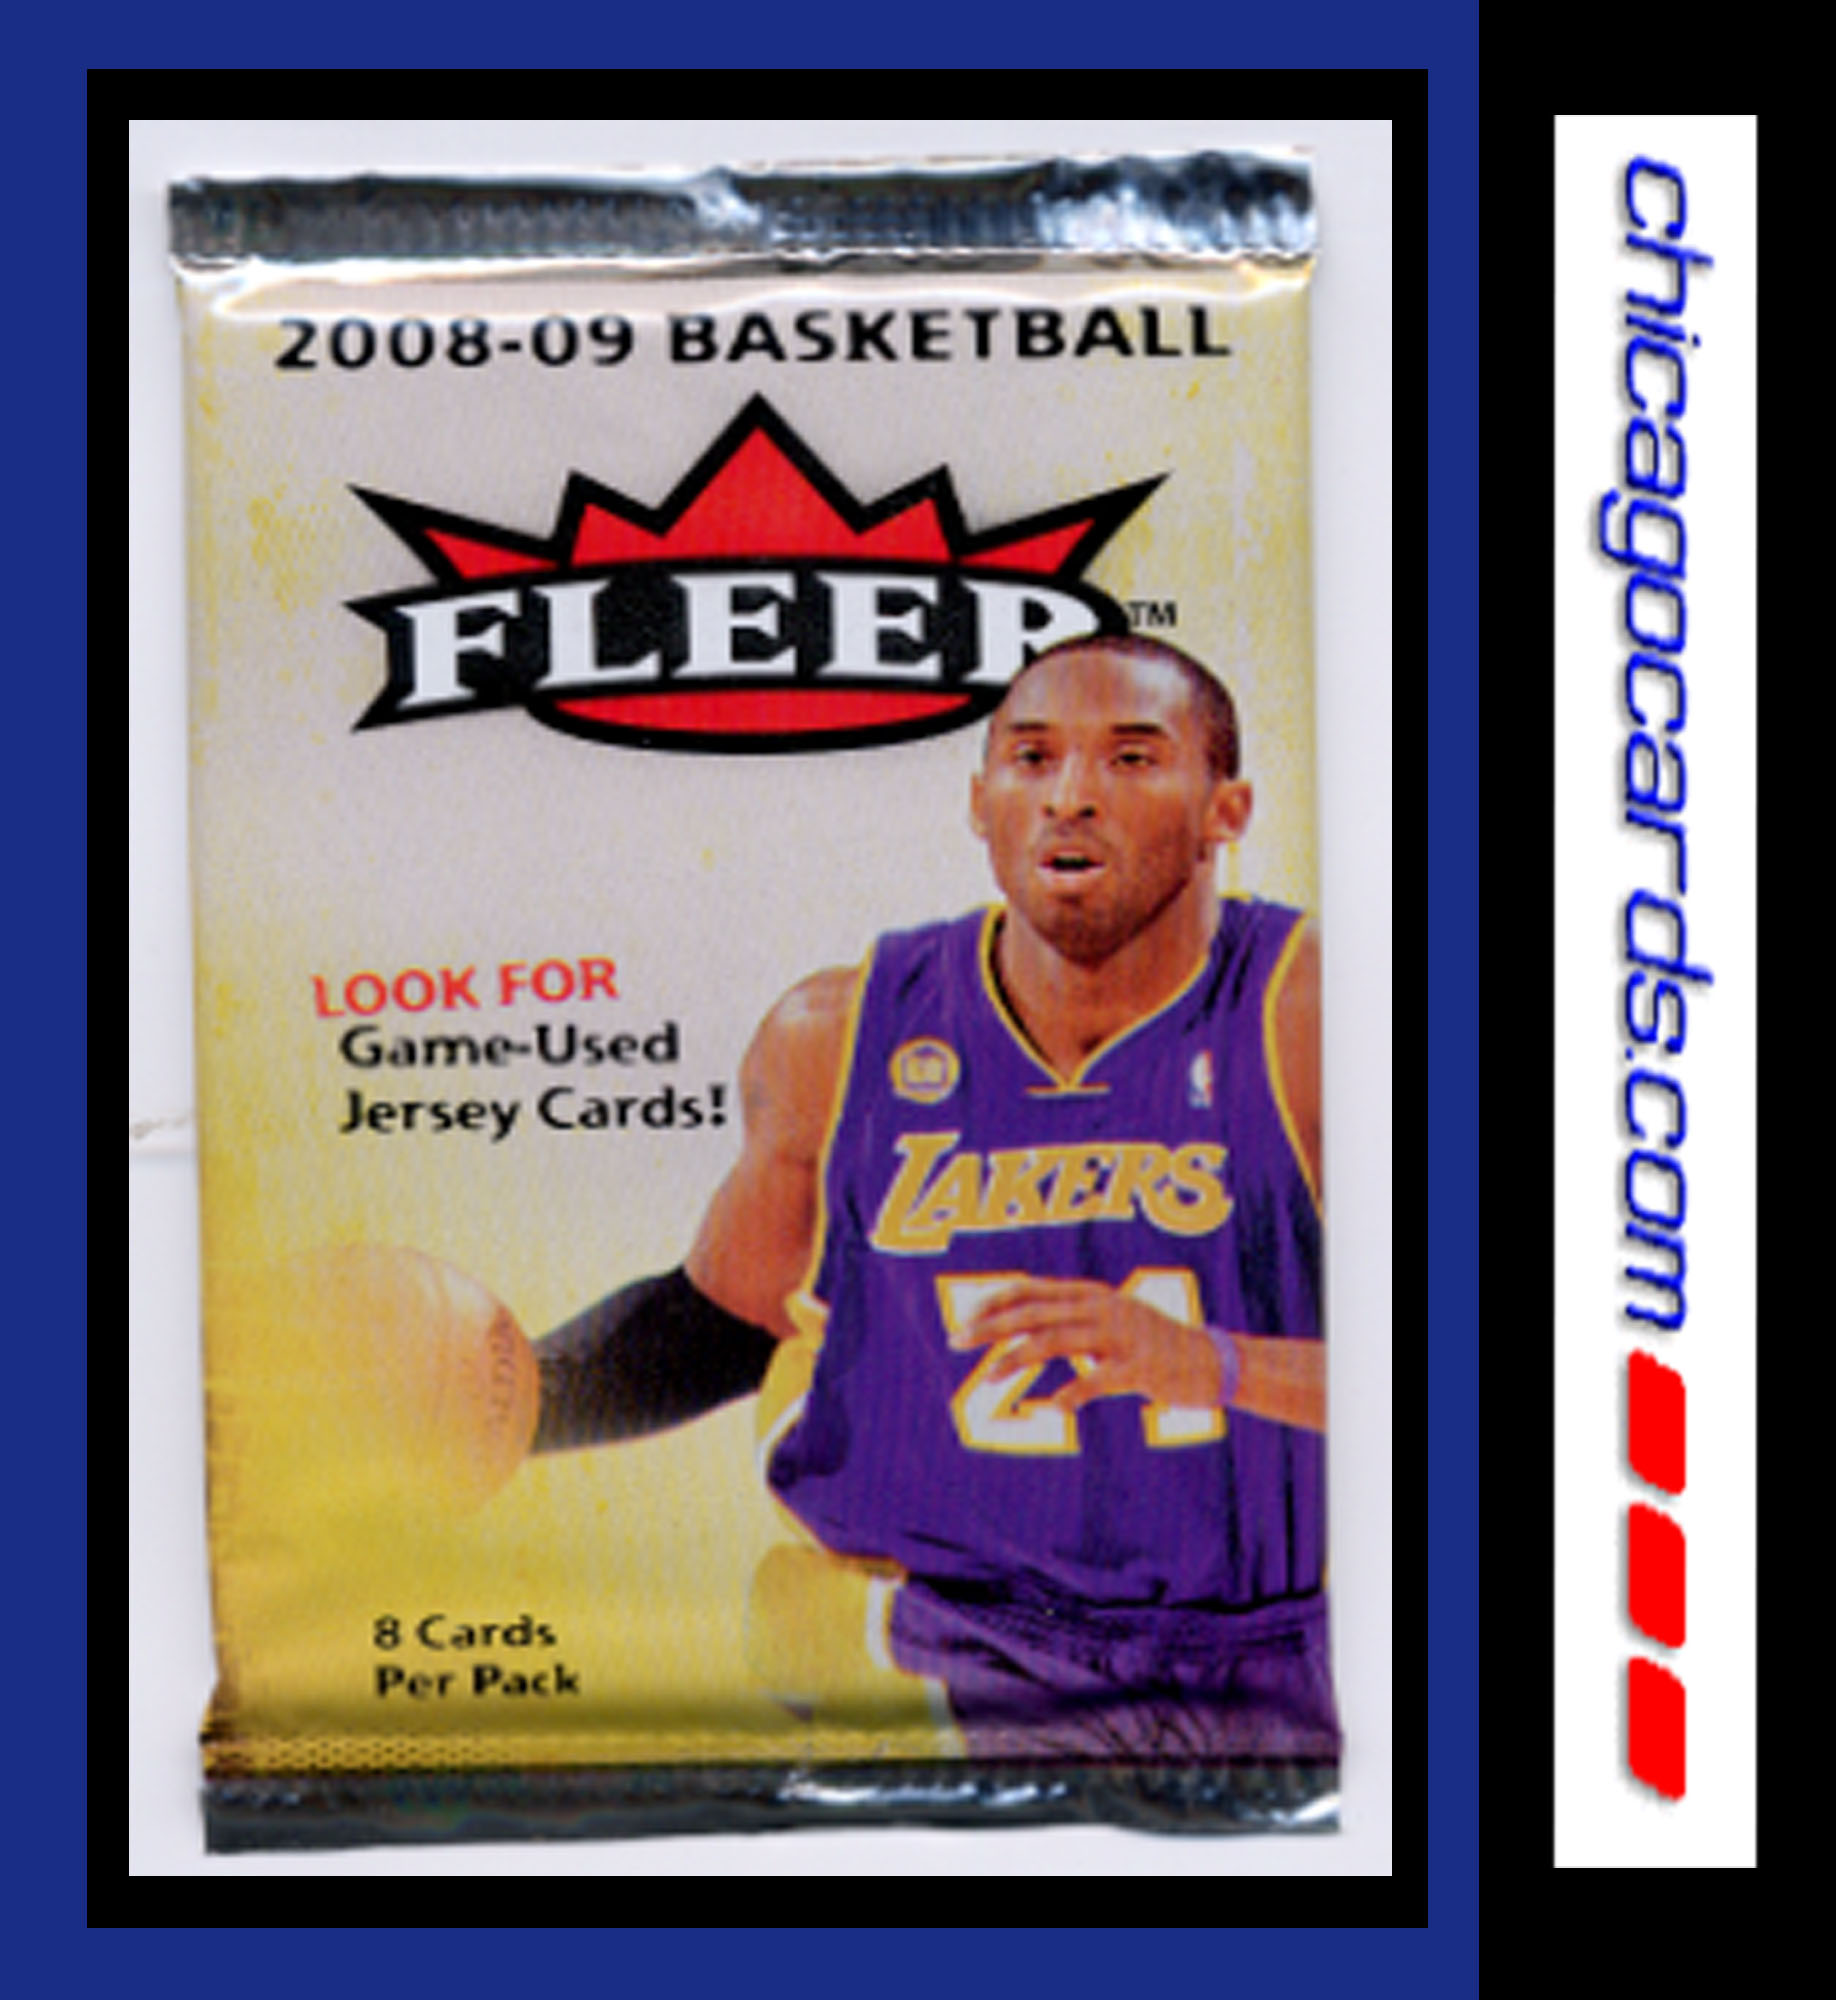 2009-09 (2009) Fleer Sealed Pack